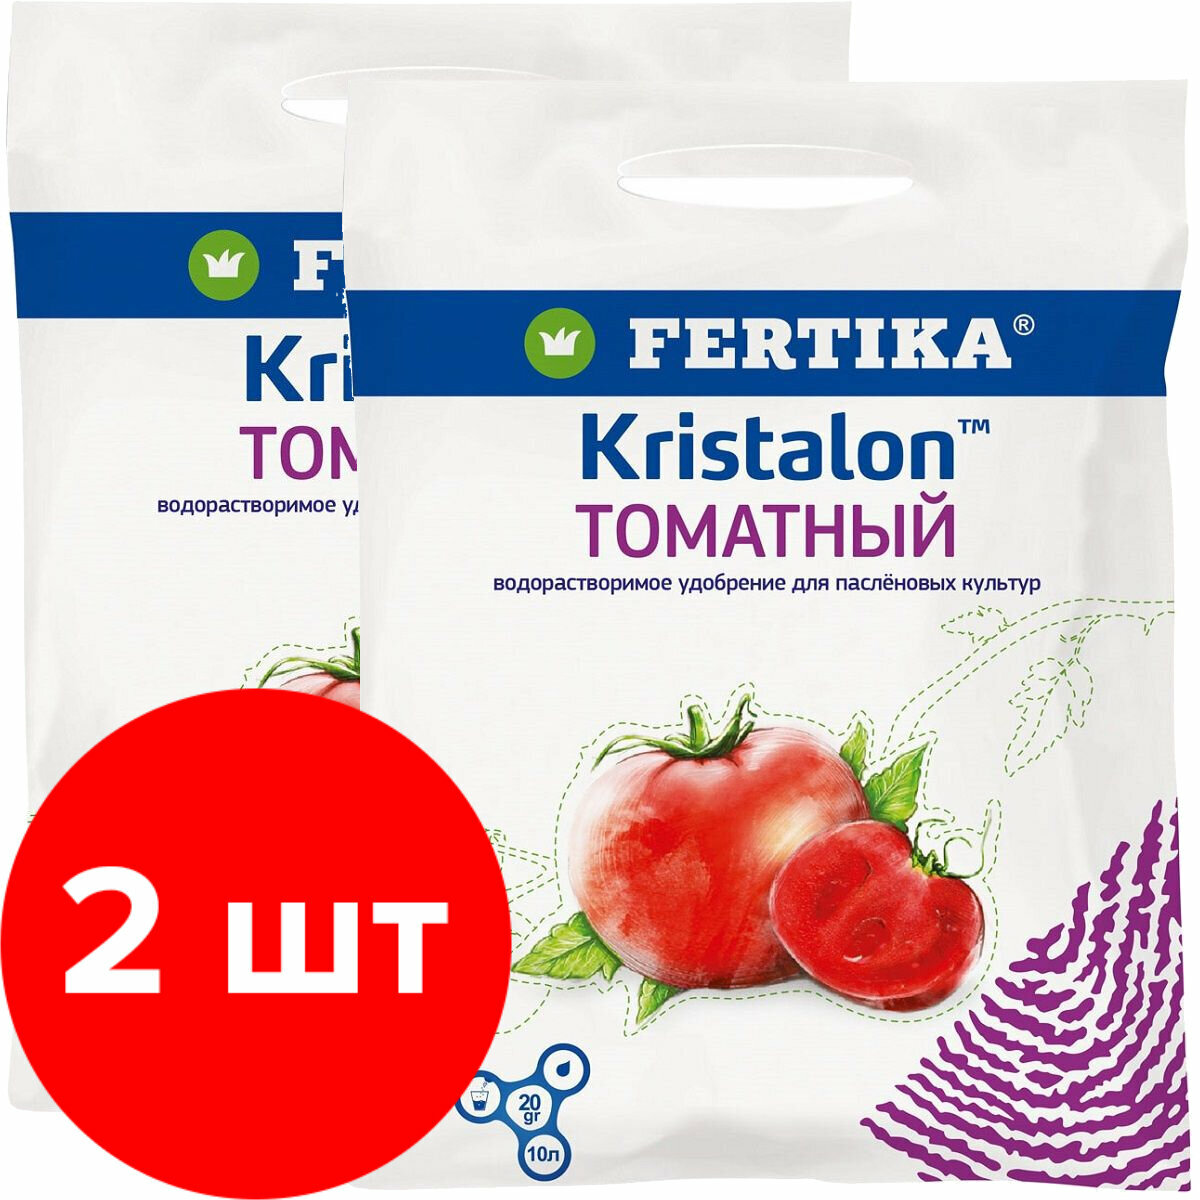 Удобрение Fertika Kristalon Томатный 2 шт по 20 г (40 г)